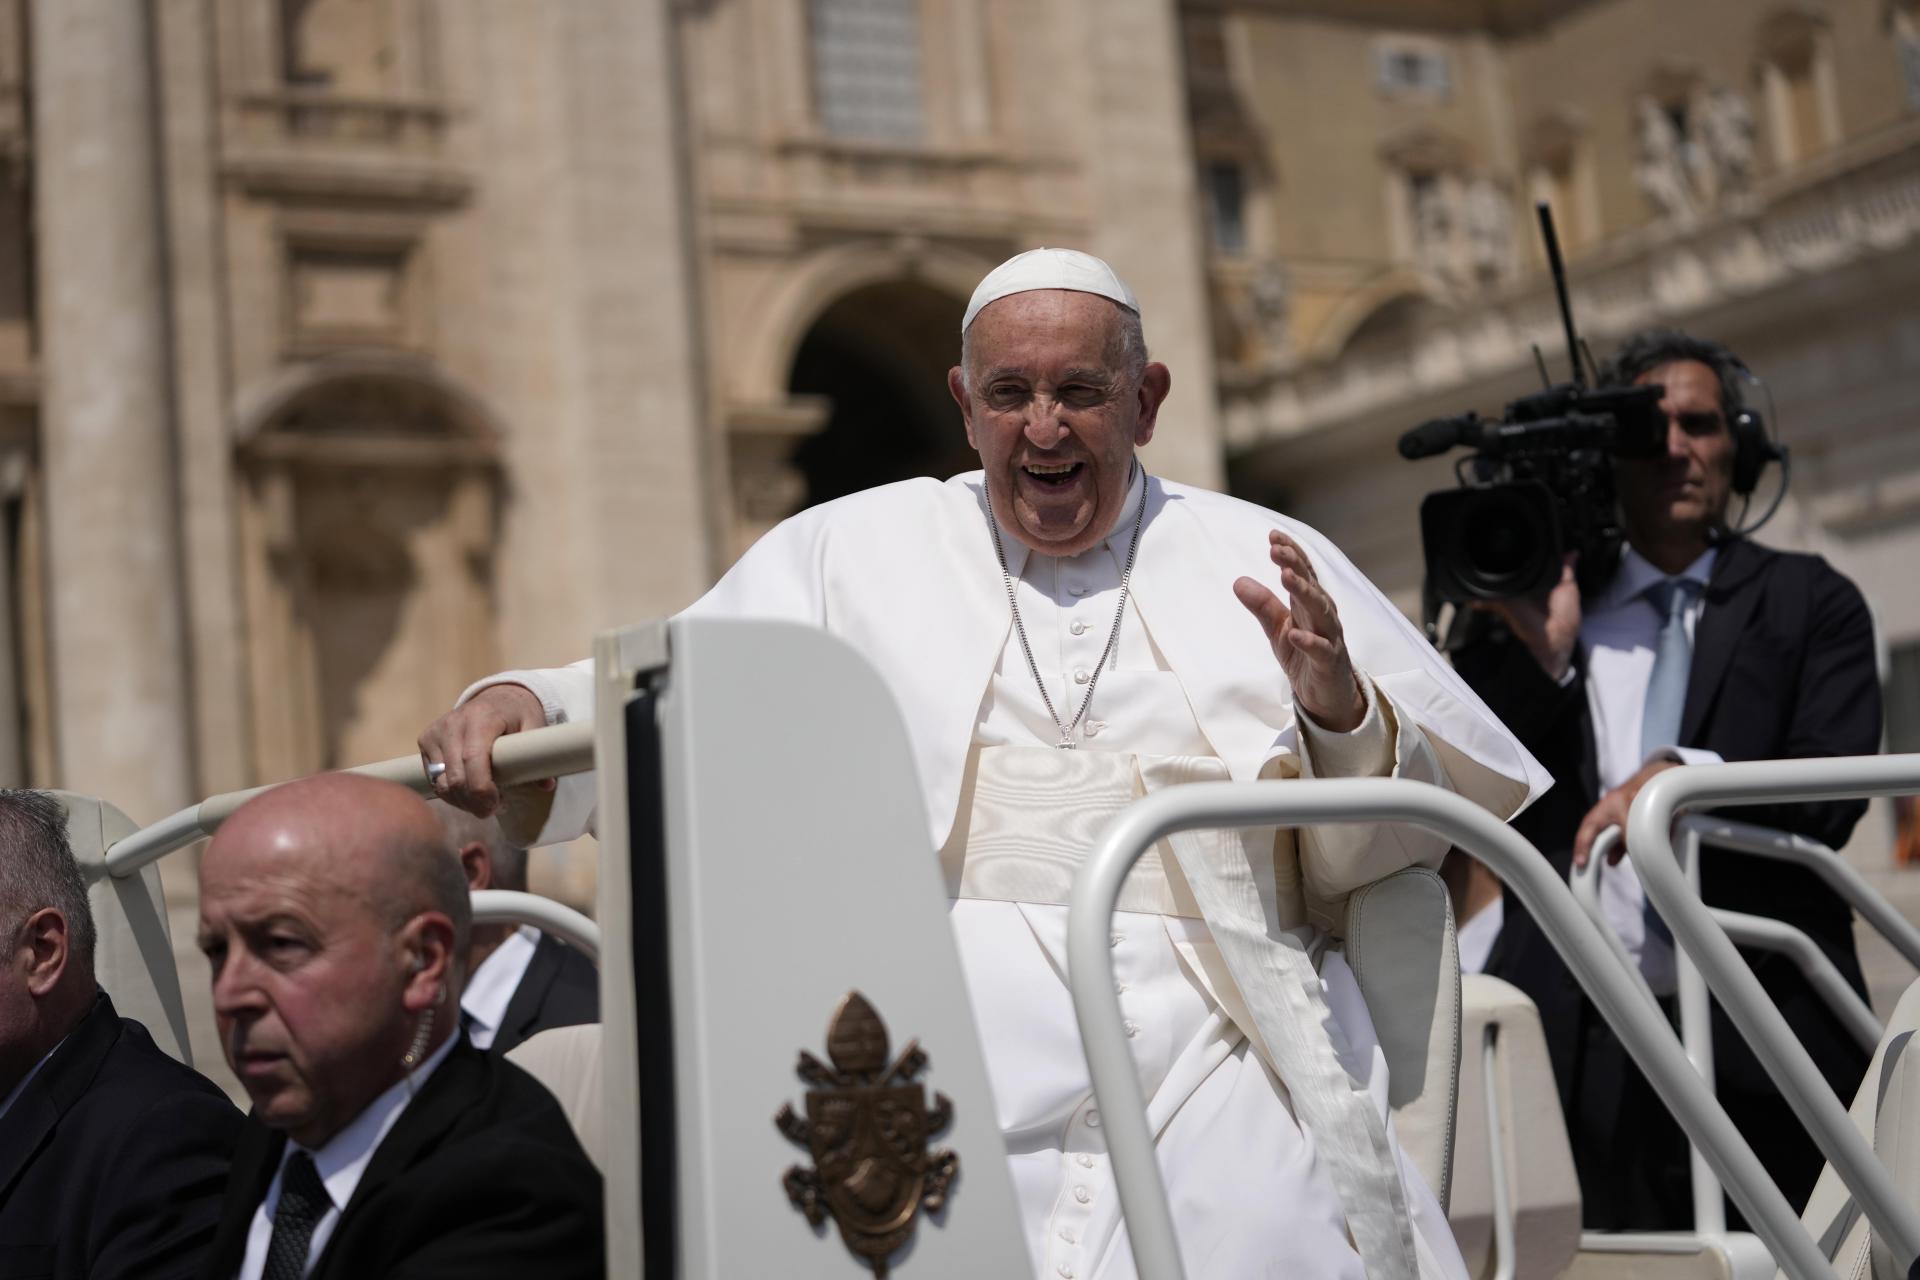 Pápež František poslal list Čaputovej: Správu som prijal s bolesťou. Odsudzujem tento zbabelý násilný čin